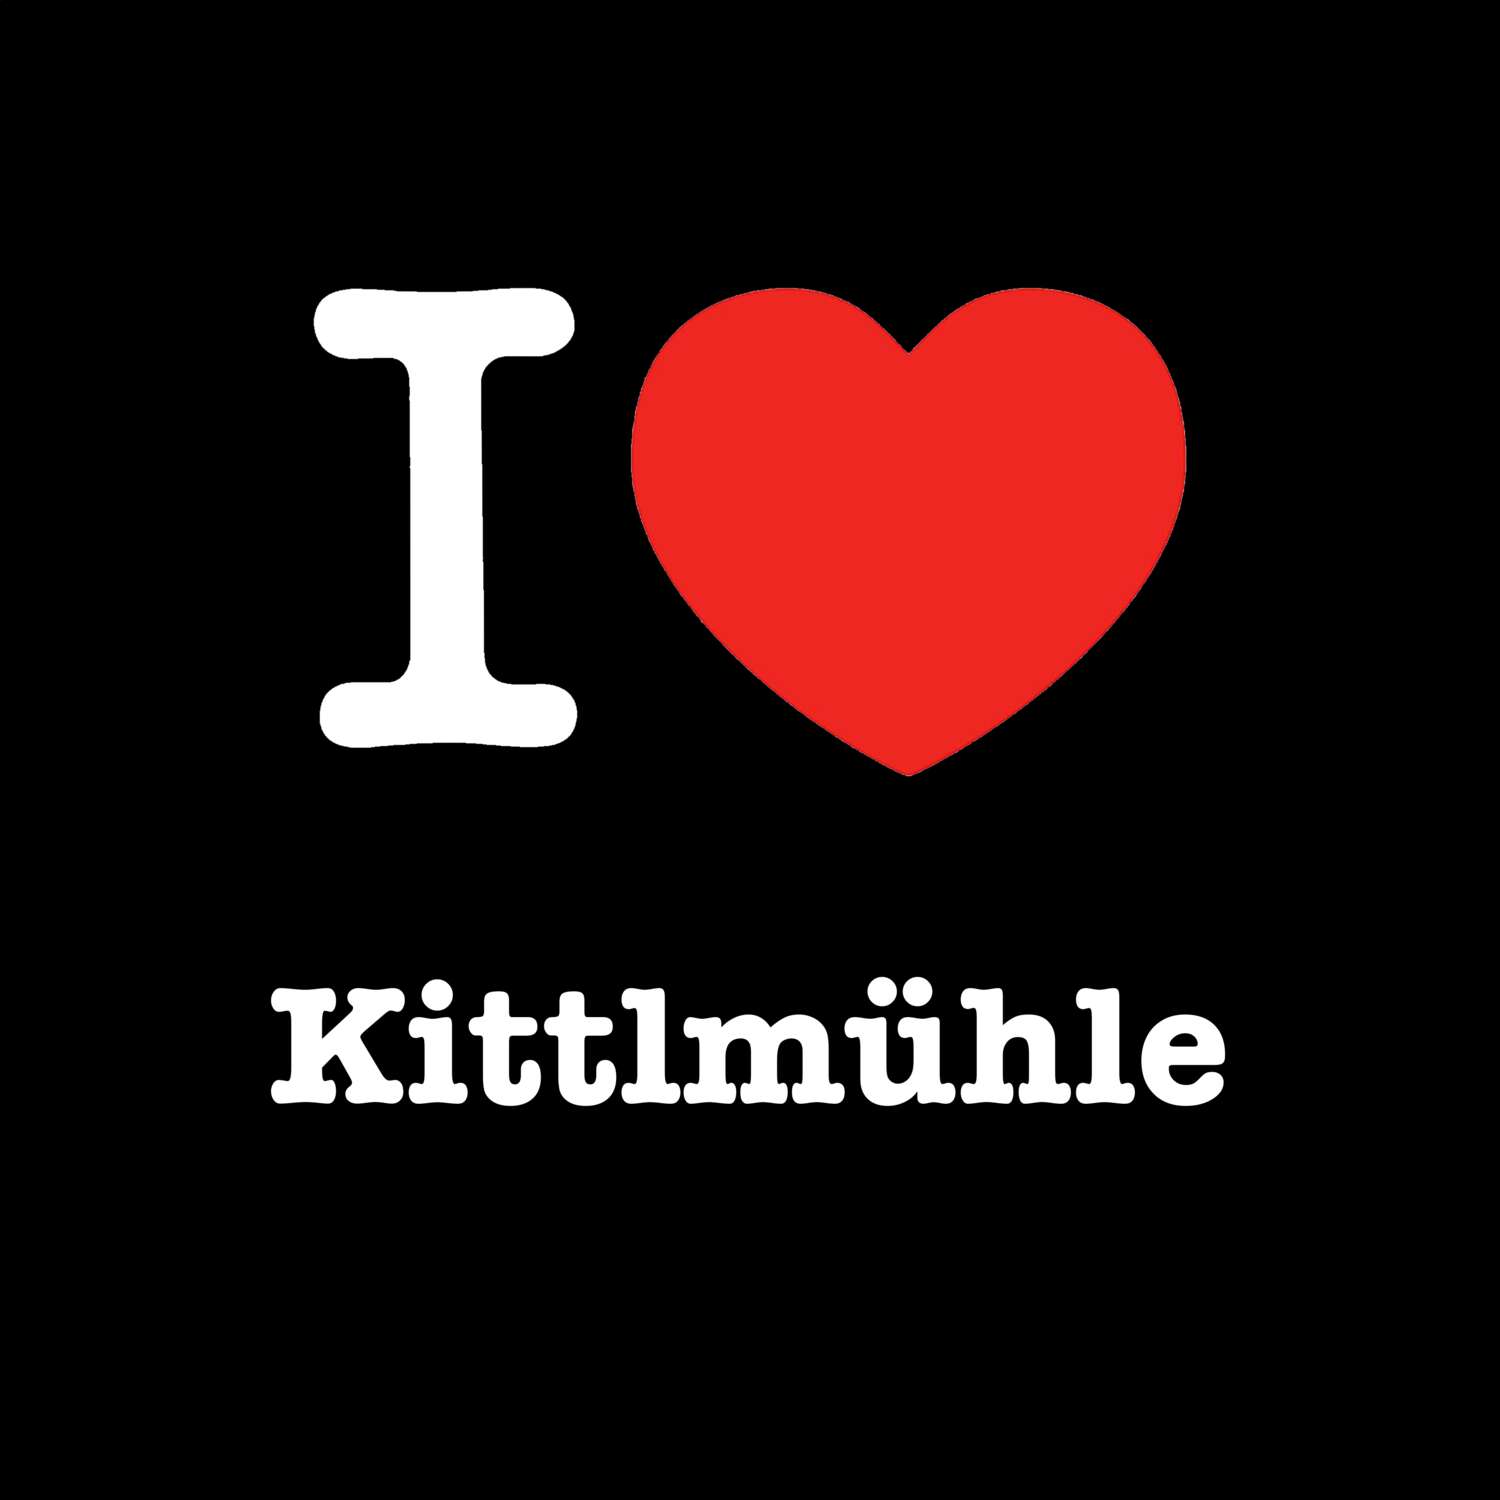 Kittlmühle T-Shirt »I love«